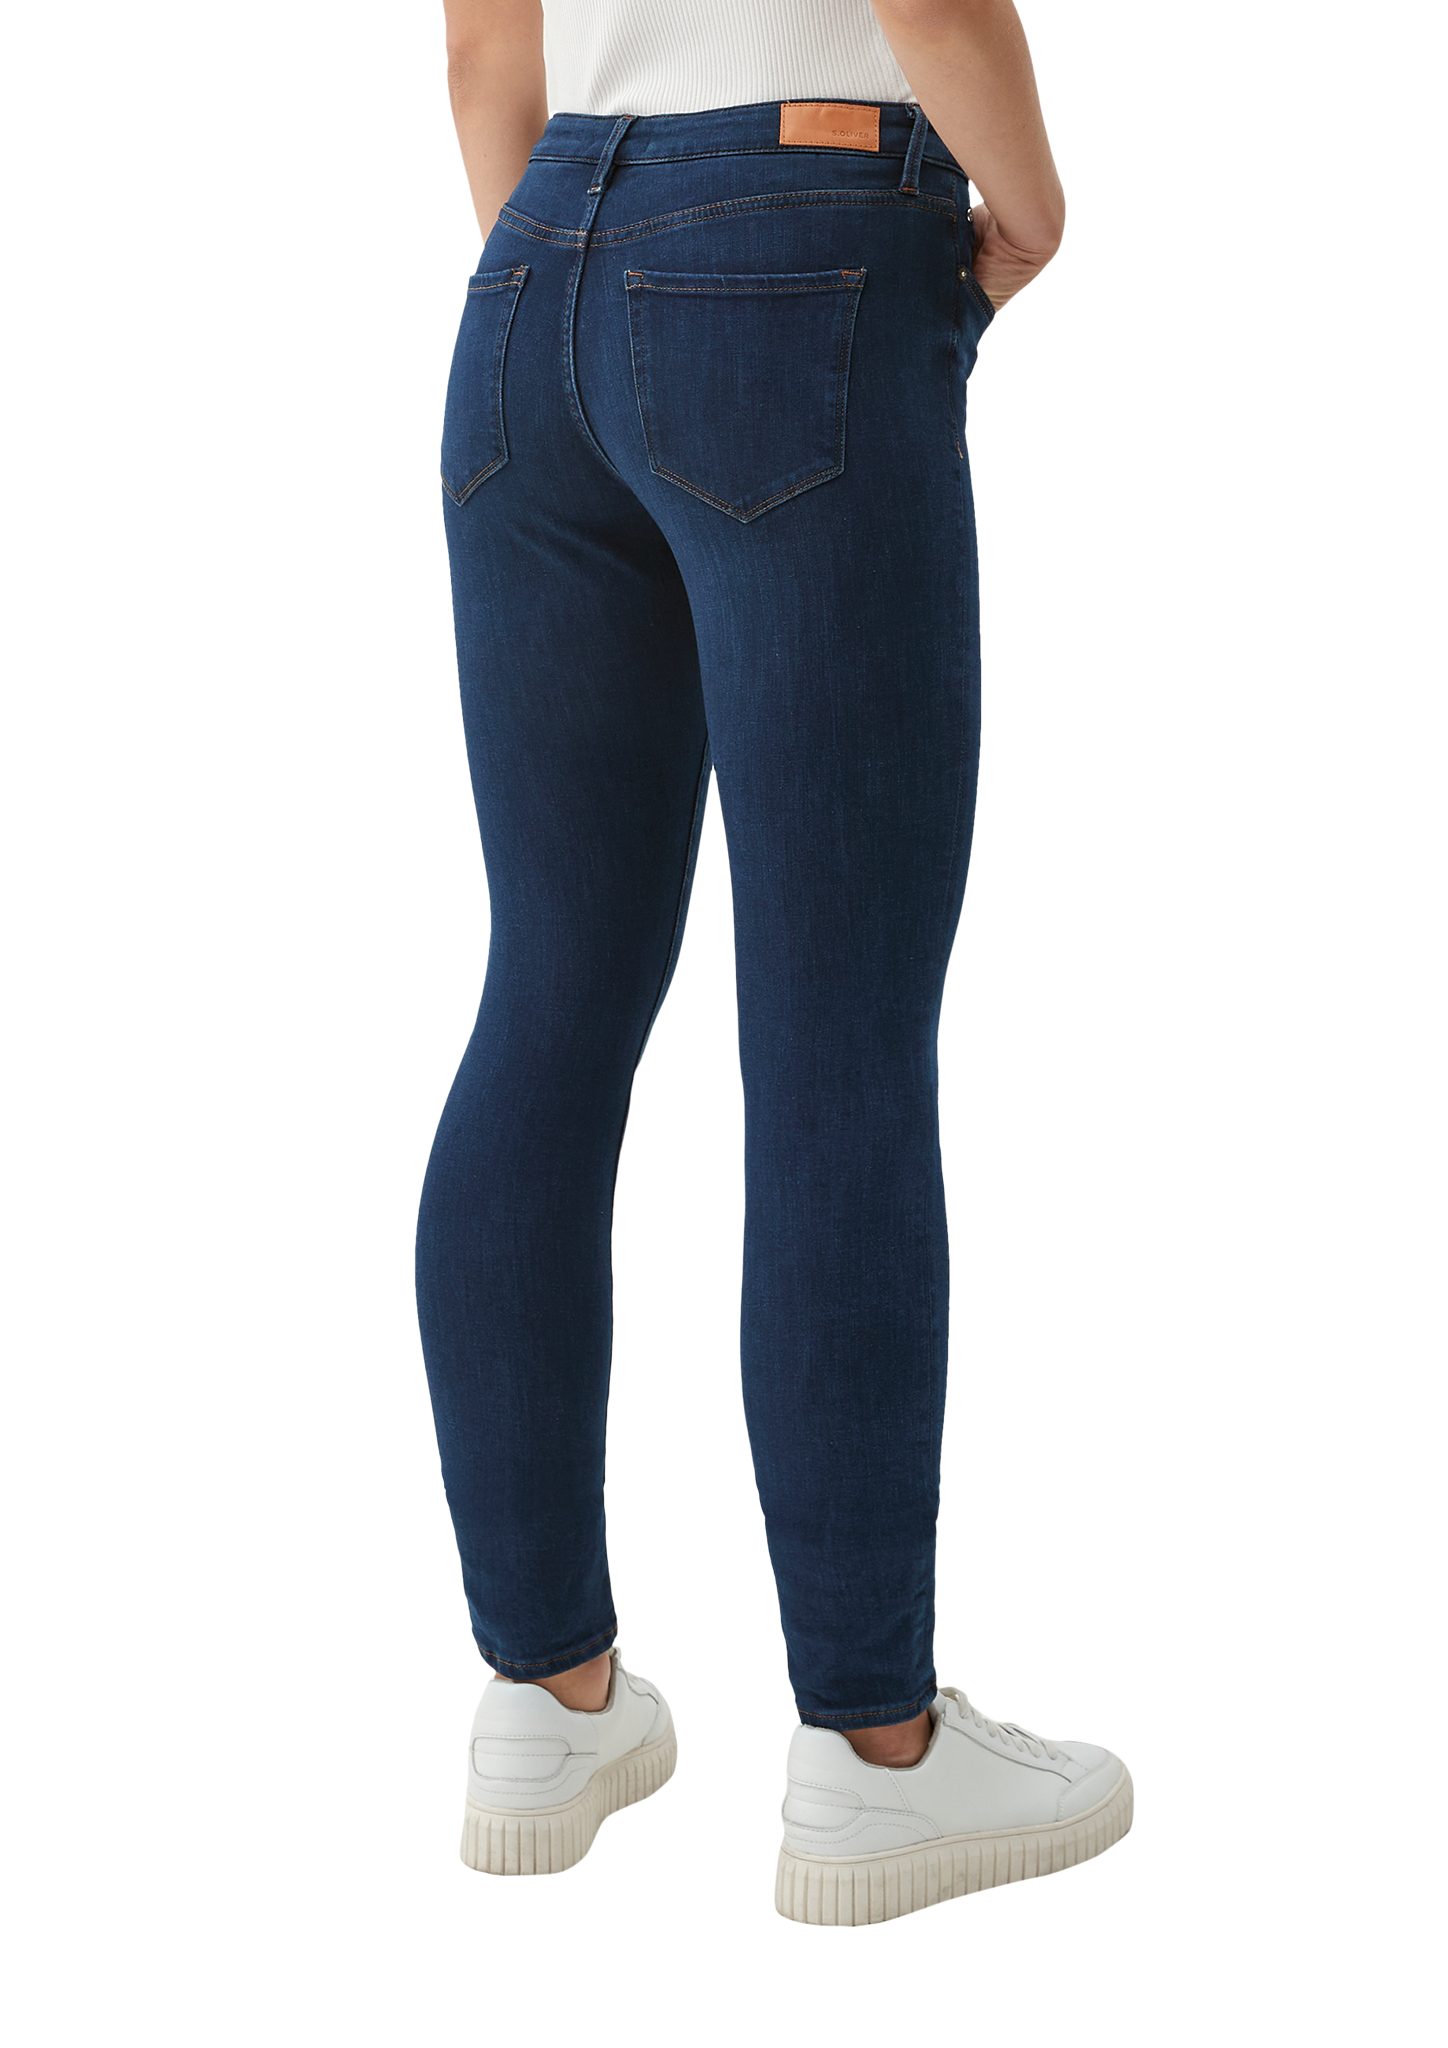 s.Oliver 5-Pocket-Jeans dark / Fit / blue Leg Skinny Izabell Label-Patch / Mid Jeans Rise Skinny